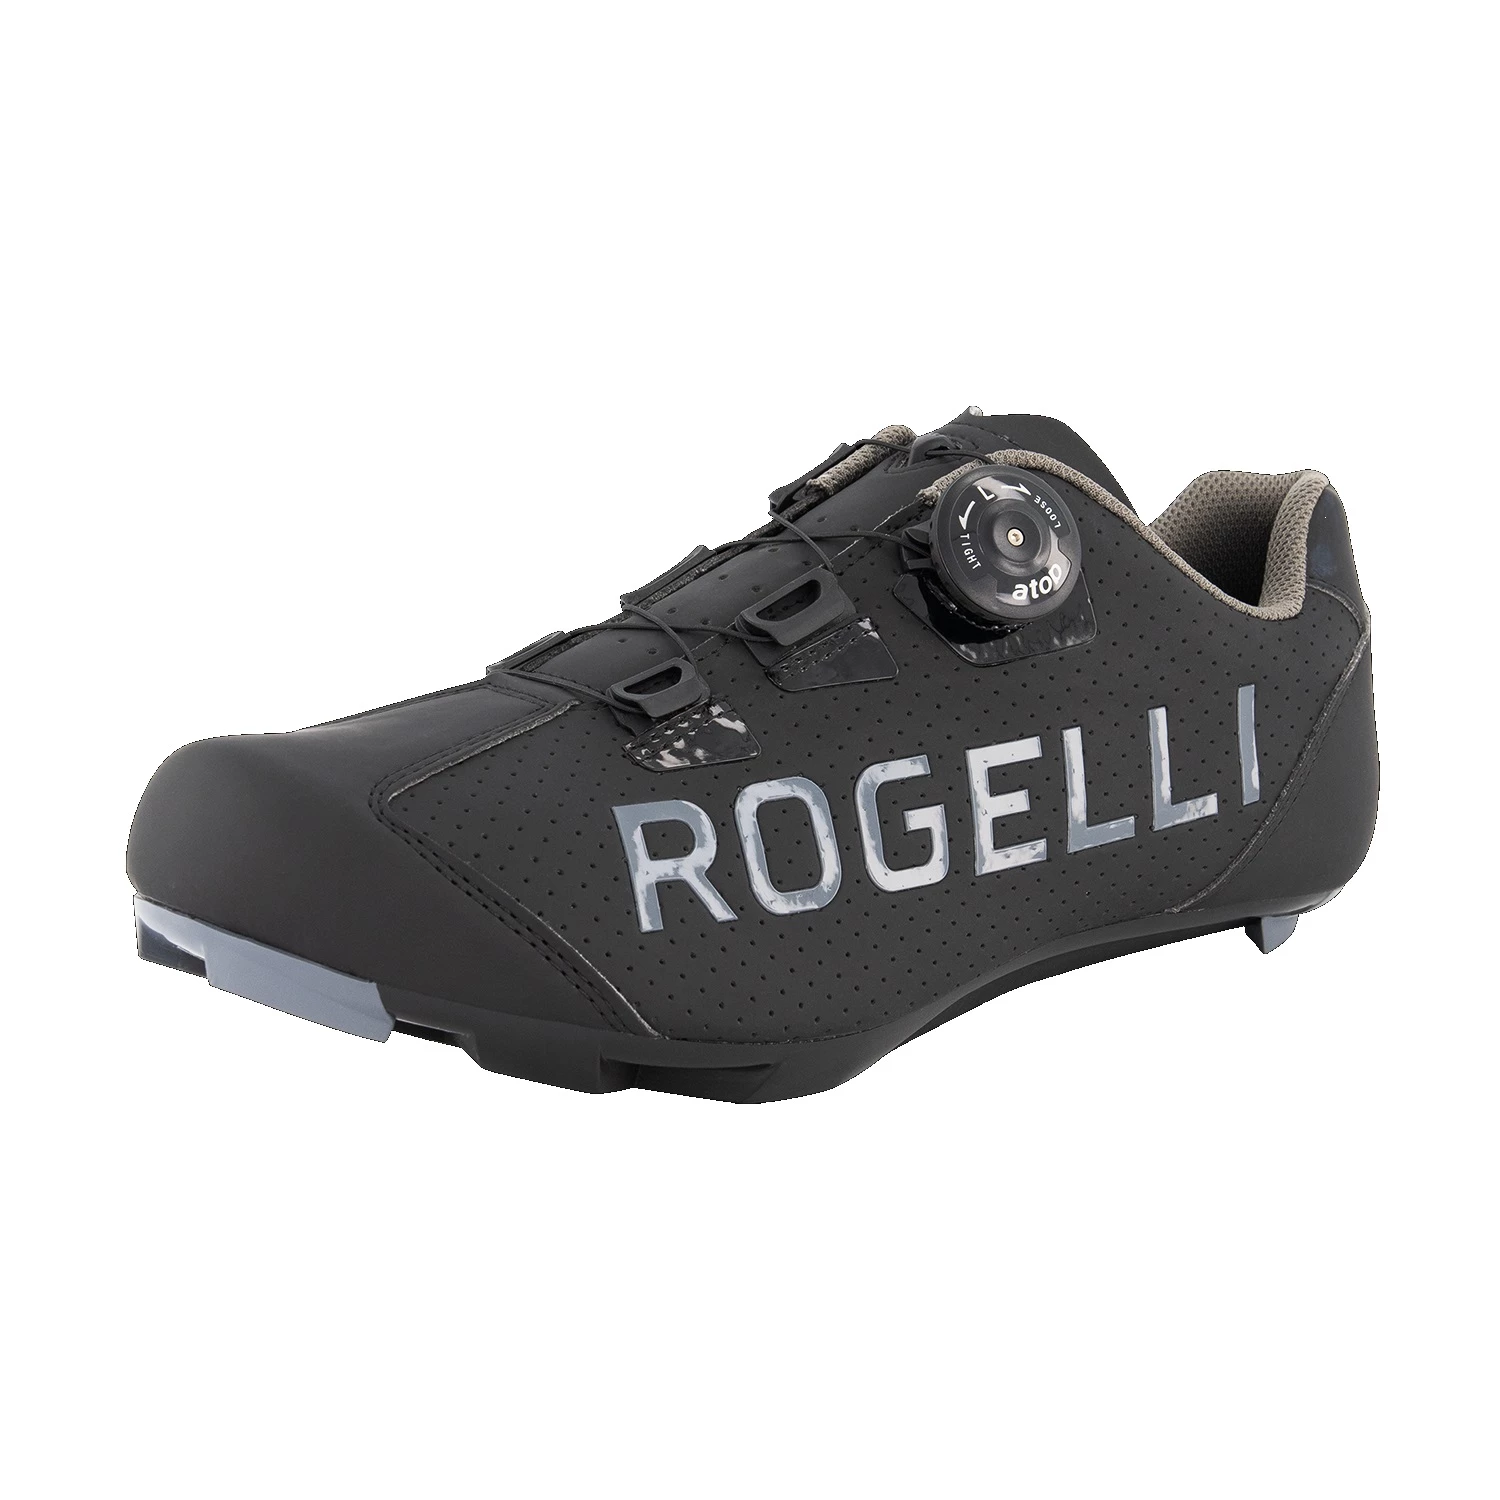 Overtreden Bowling Clan Rogelli Race Voor SPD-SL Pedaal wielrenschoenen zwart van fietsschoenen